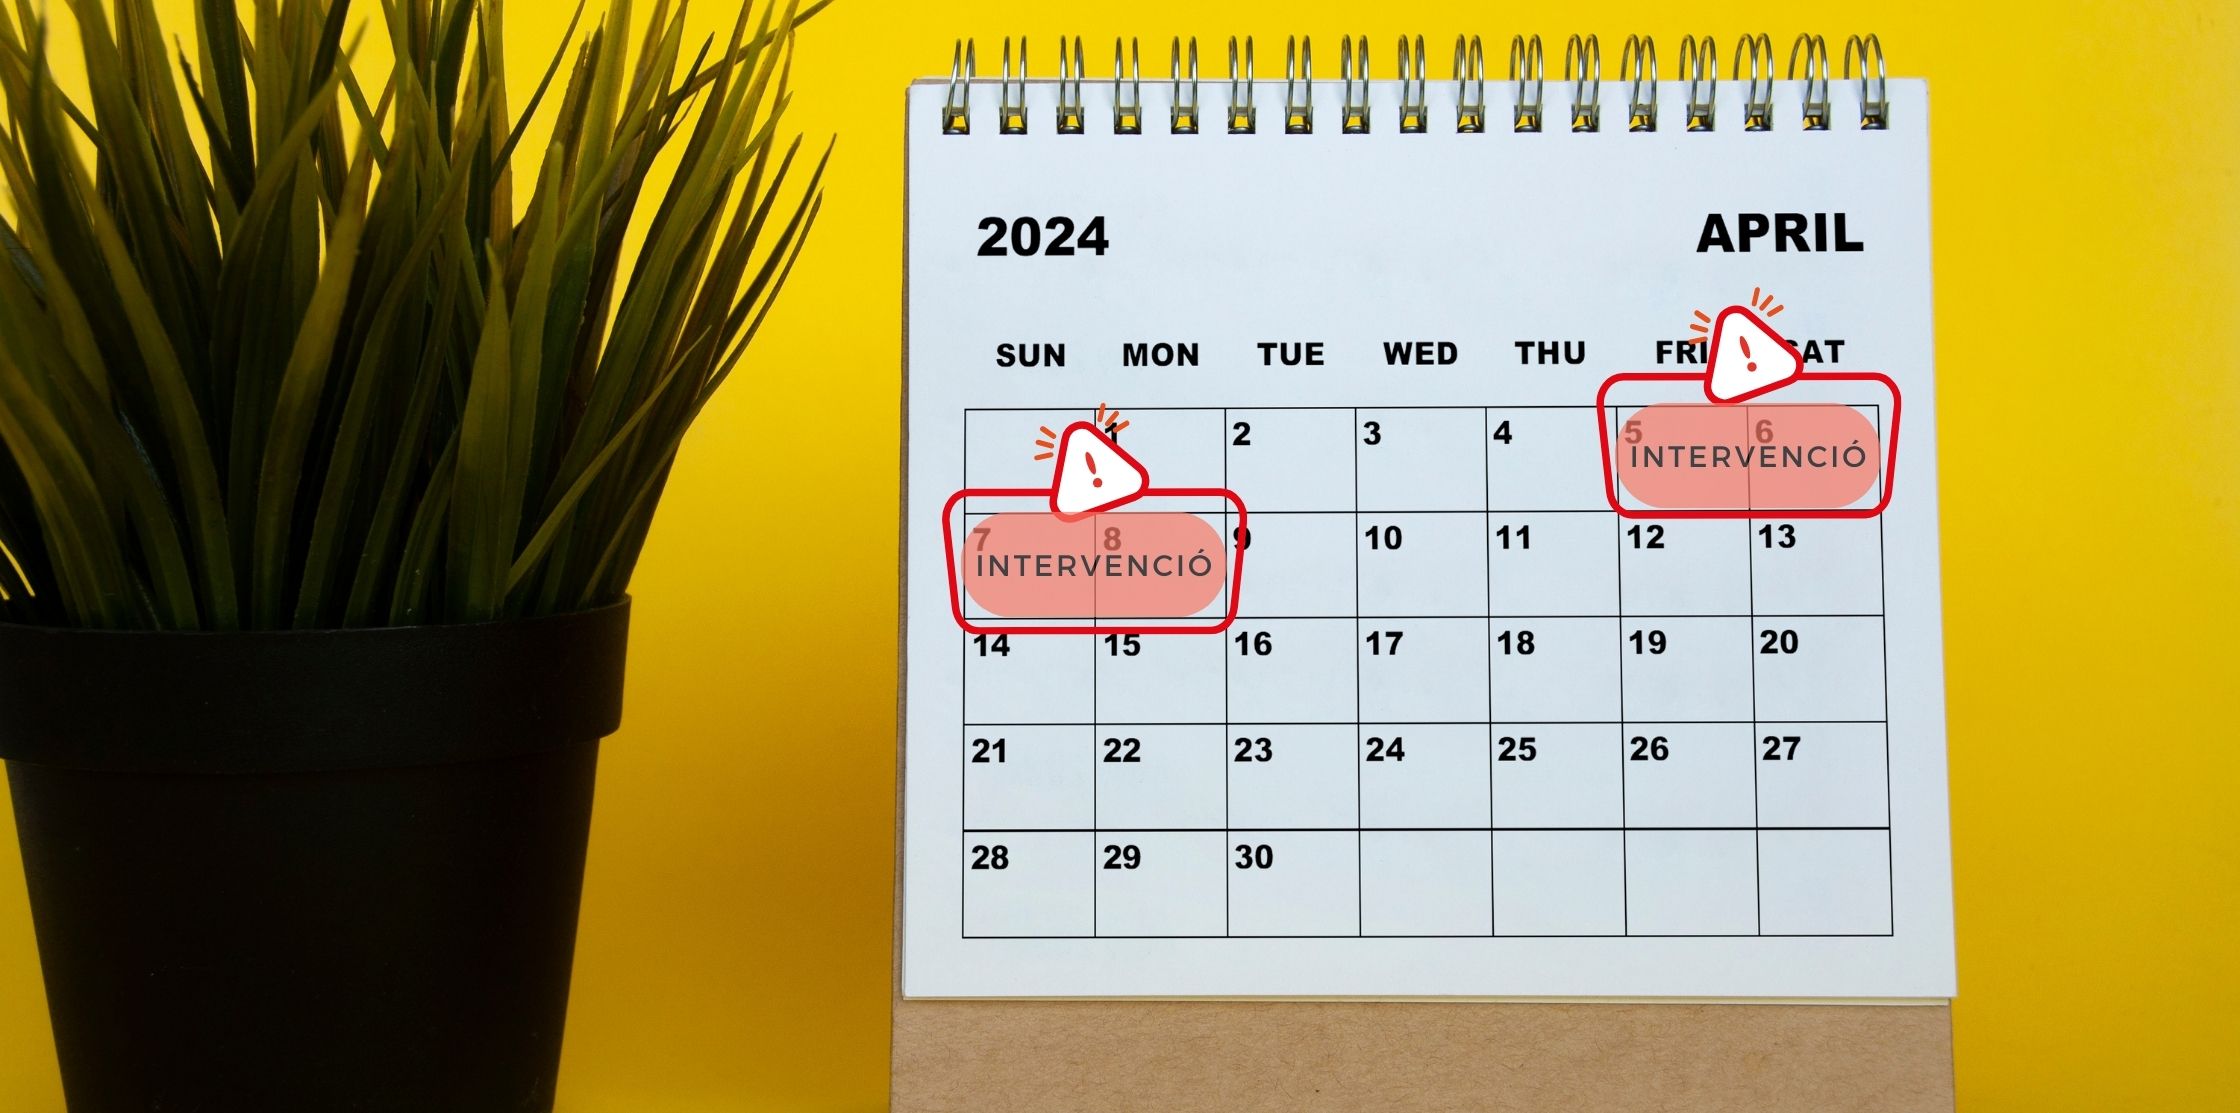 Calendário do mês de abril de 2024 onde está assinalada a intervenção que implicará o corte de alguns serviços AOC, concretamente de 5 a 8 de abril.